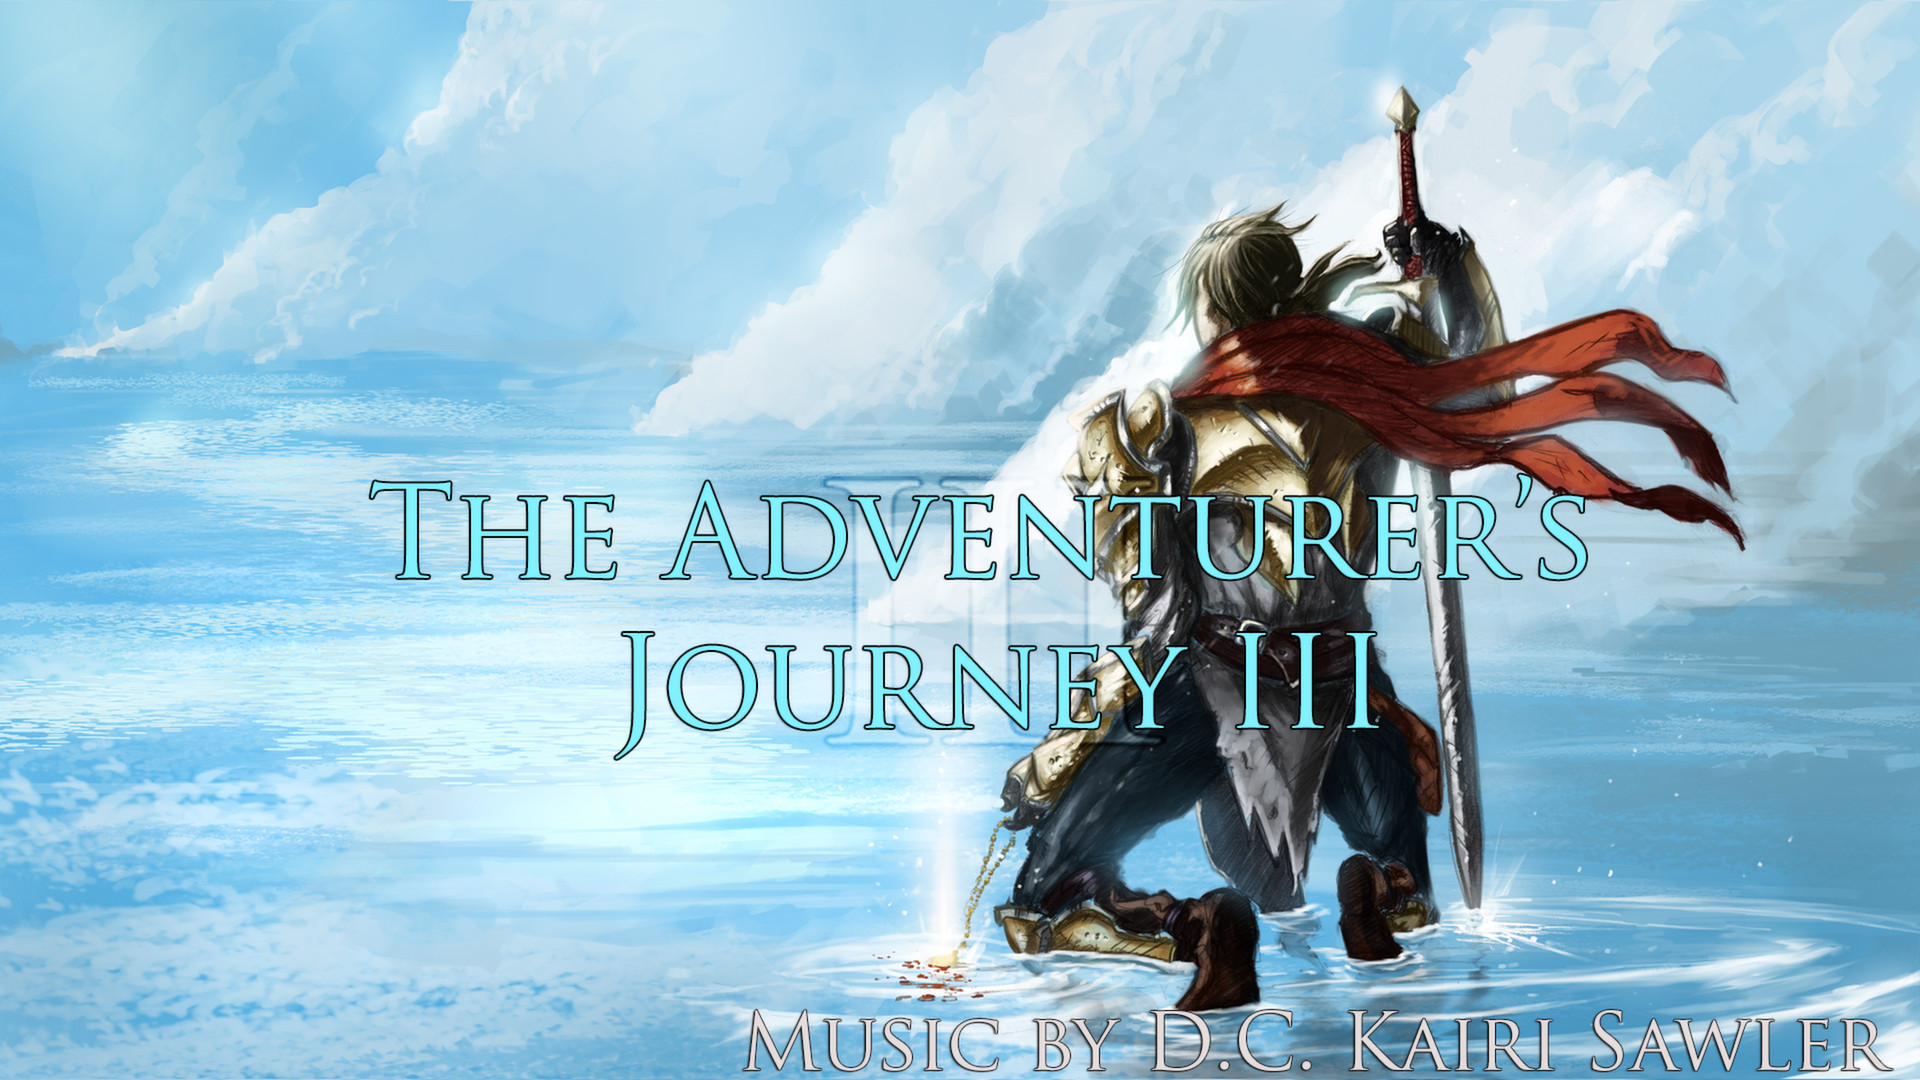 RPG Maker VX Ace - The Adventurer's Journey III DLC Steam CD Key, 4.51 usd